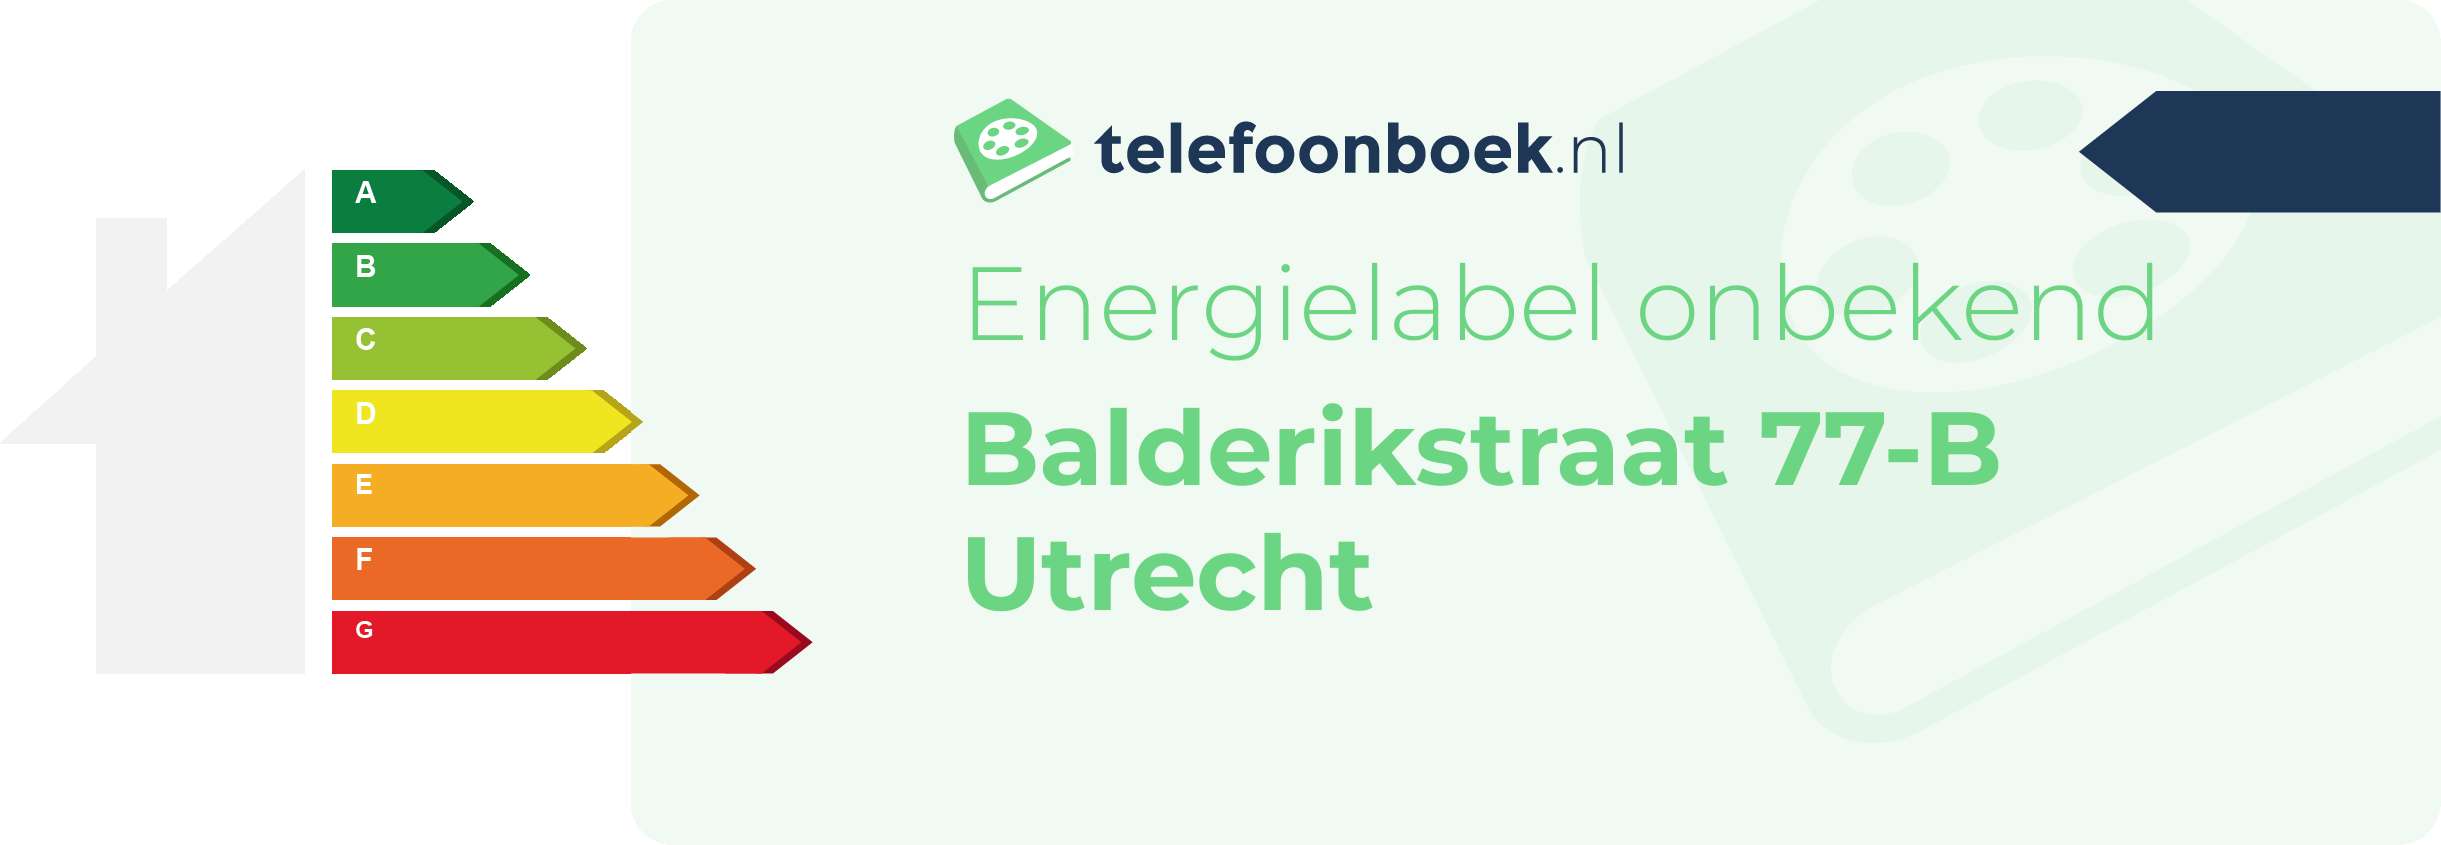 Energielabel Balderikstraat 77-B Utrecht